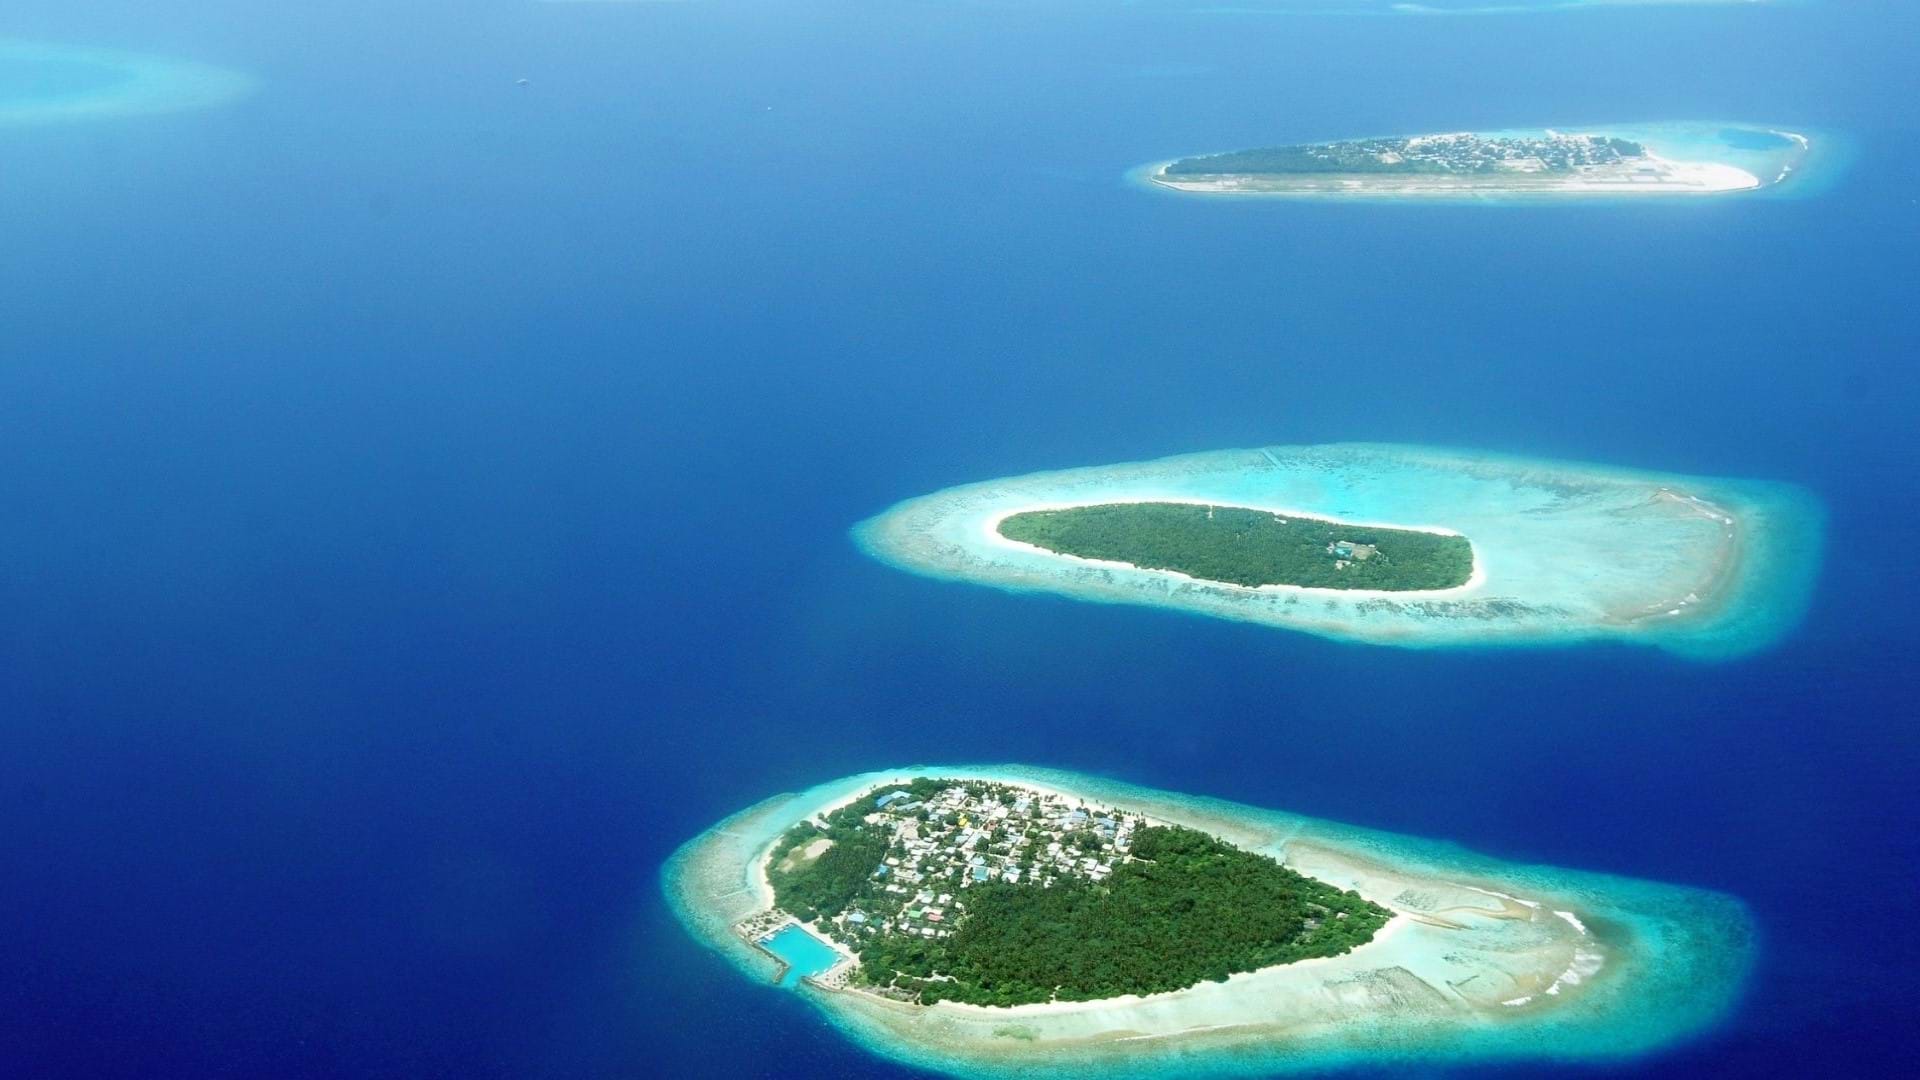 Slika Maldiva slikana iz aviona, ostrva sa tirkiznom bojom mora koja se utapaju u plavetnilo Indijskog okeana